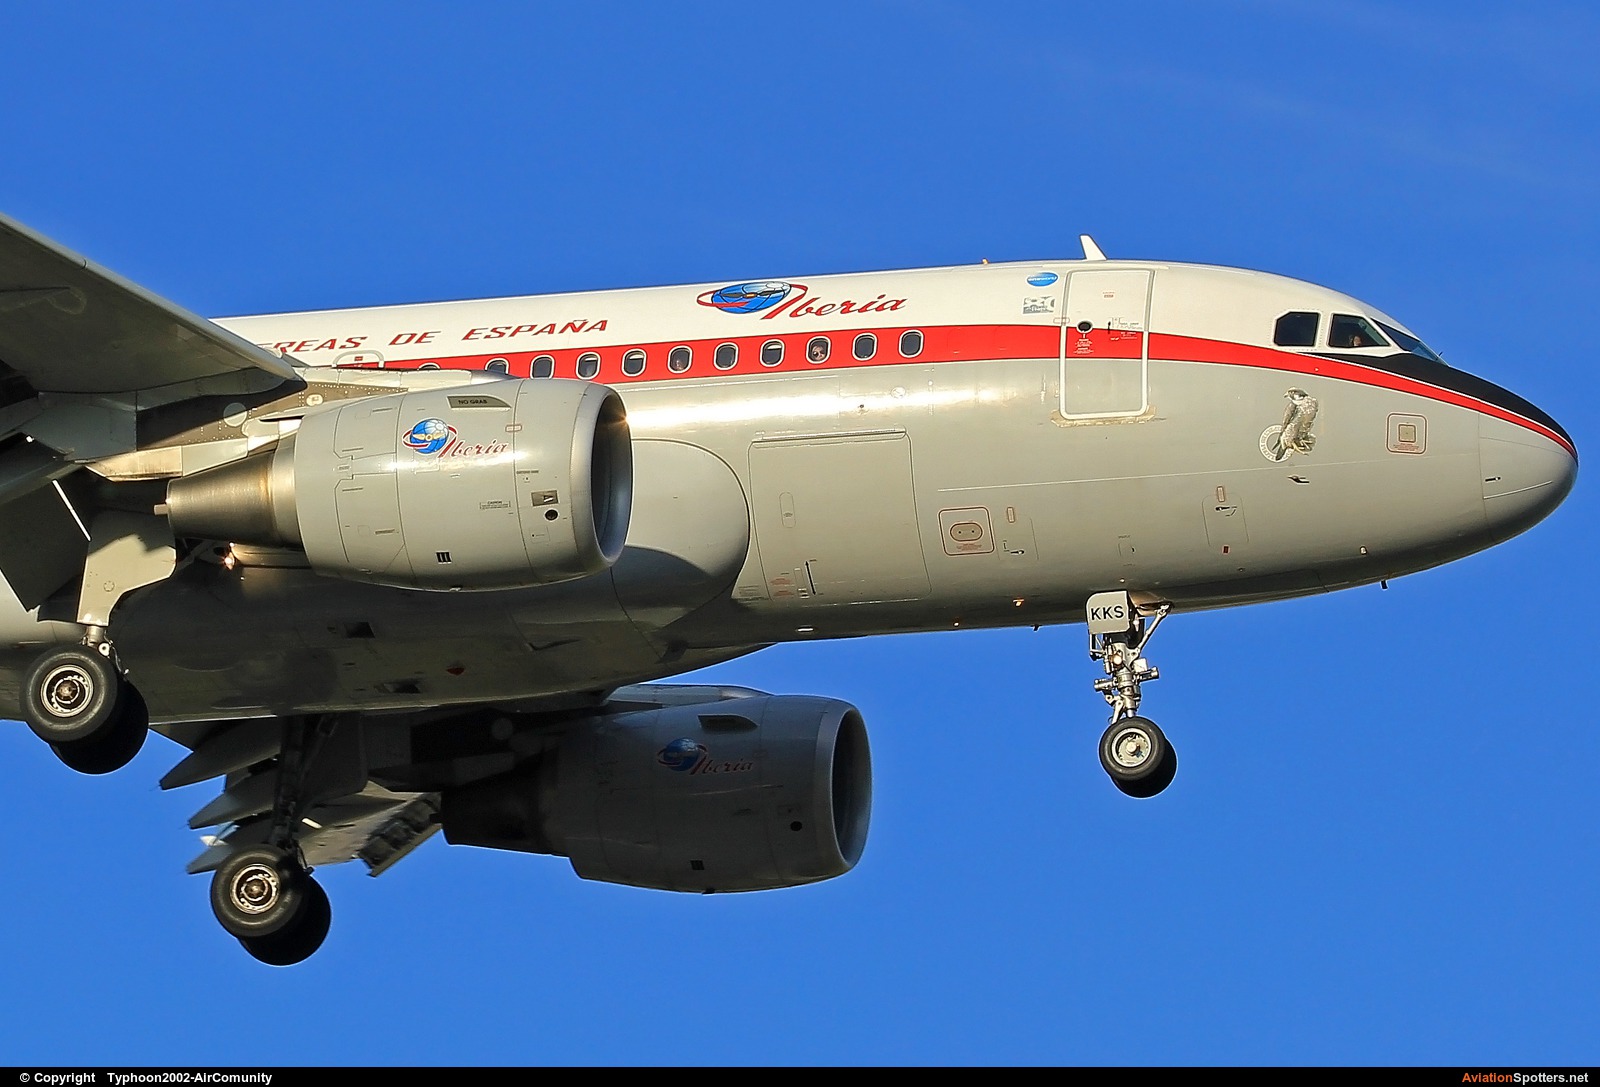 Iberia  -  A319-111  (EC-KKS) By Typhoon2002-AirComunity (AirComunity)